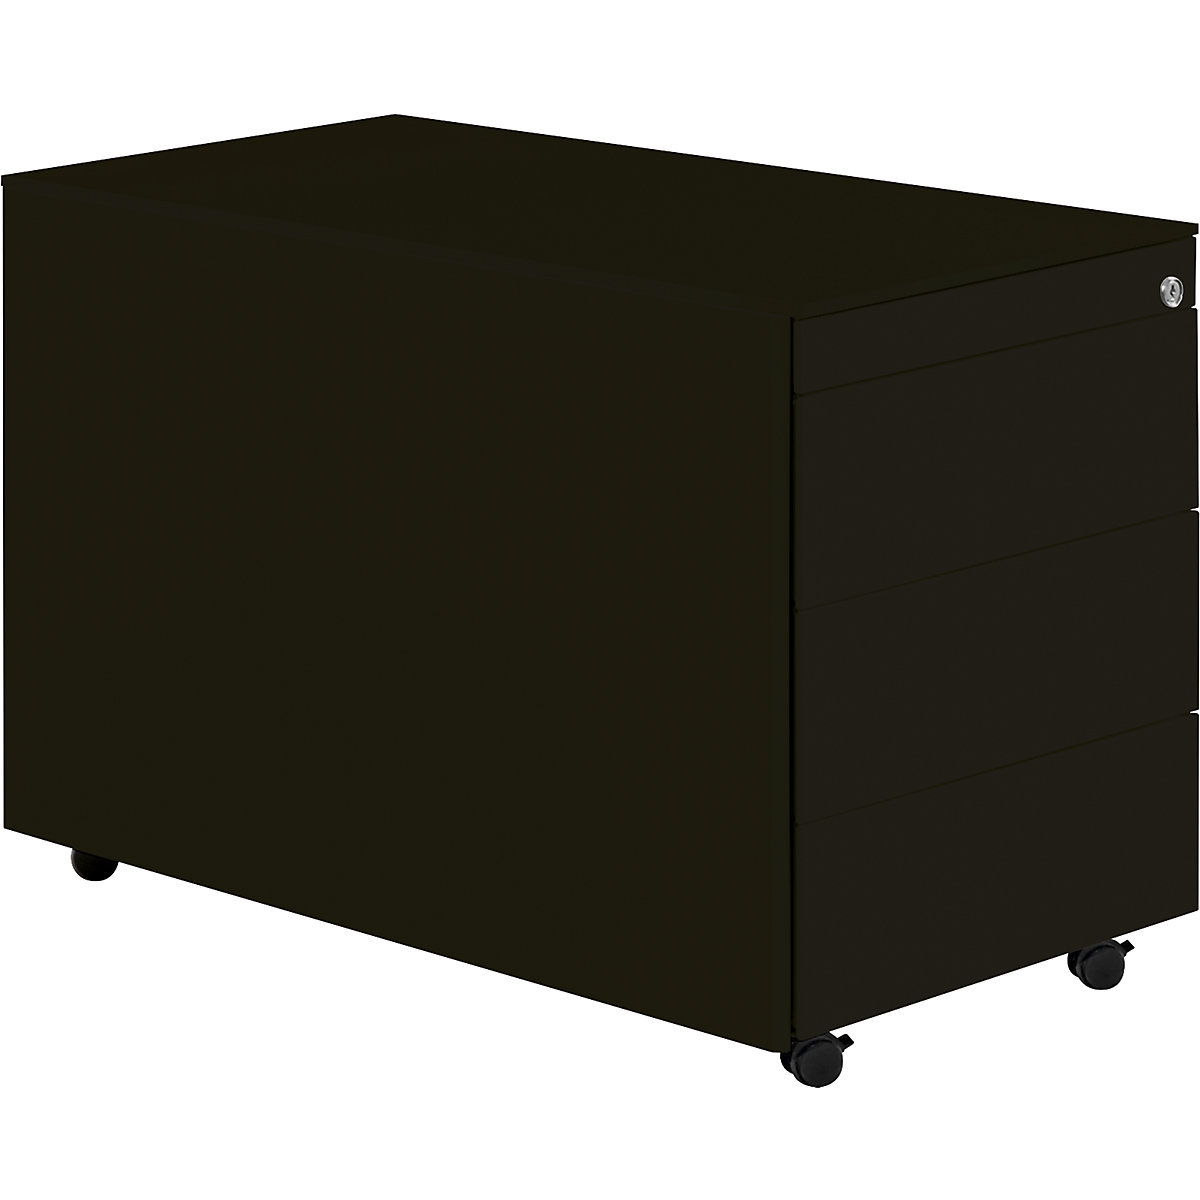 Predalnik s kolesi – mauser, VxG 570 x 800 mm, jeklena plošča, 3 predali, grafitno črna / grafitno črna / grafitno črna-8